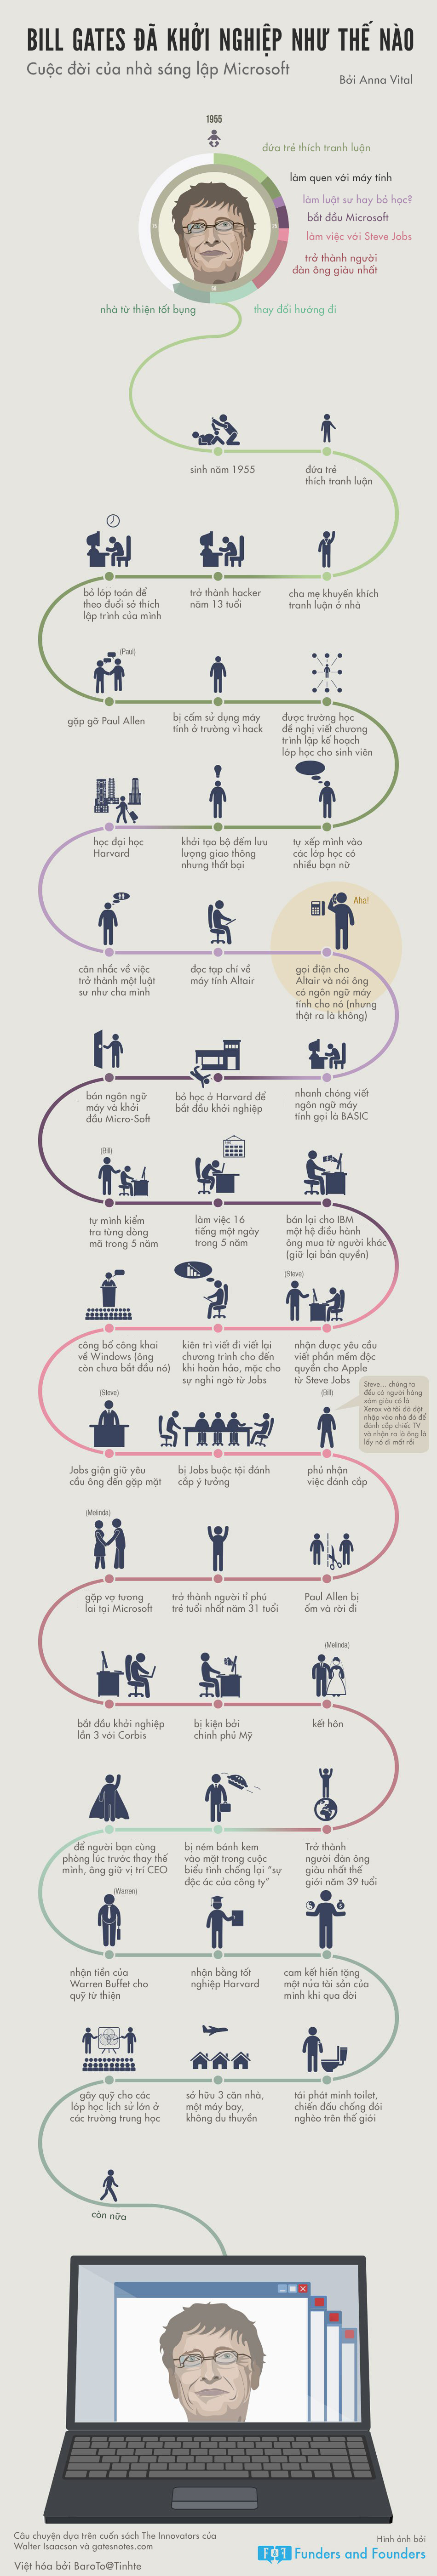 [Infographic] Cuộc đời khởi nghiệp của Bill Gates 14